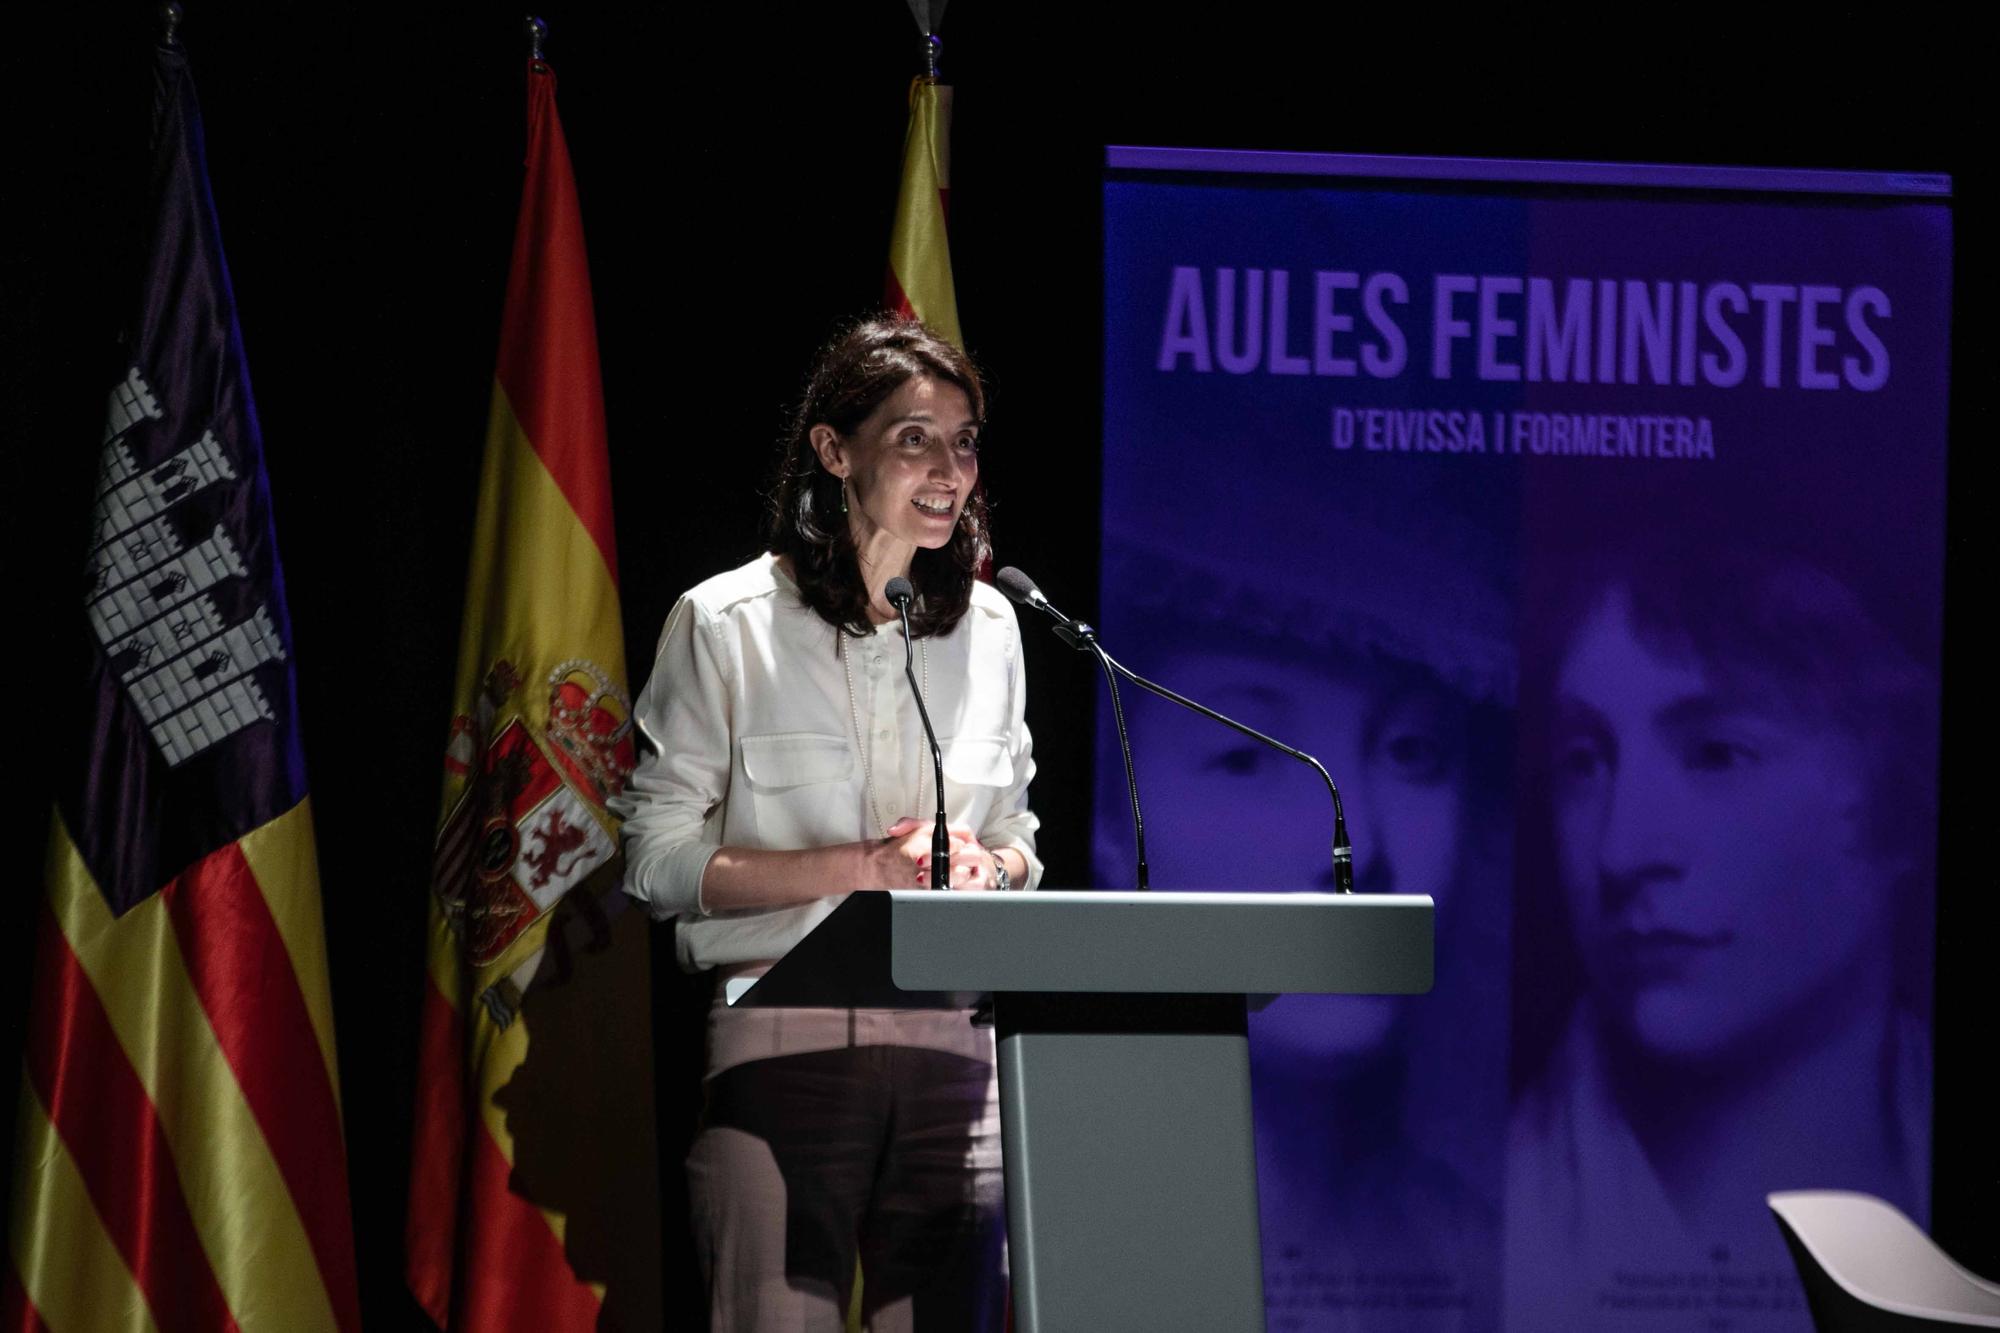 Aulas feministas en Ibiza